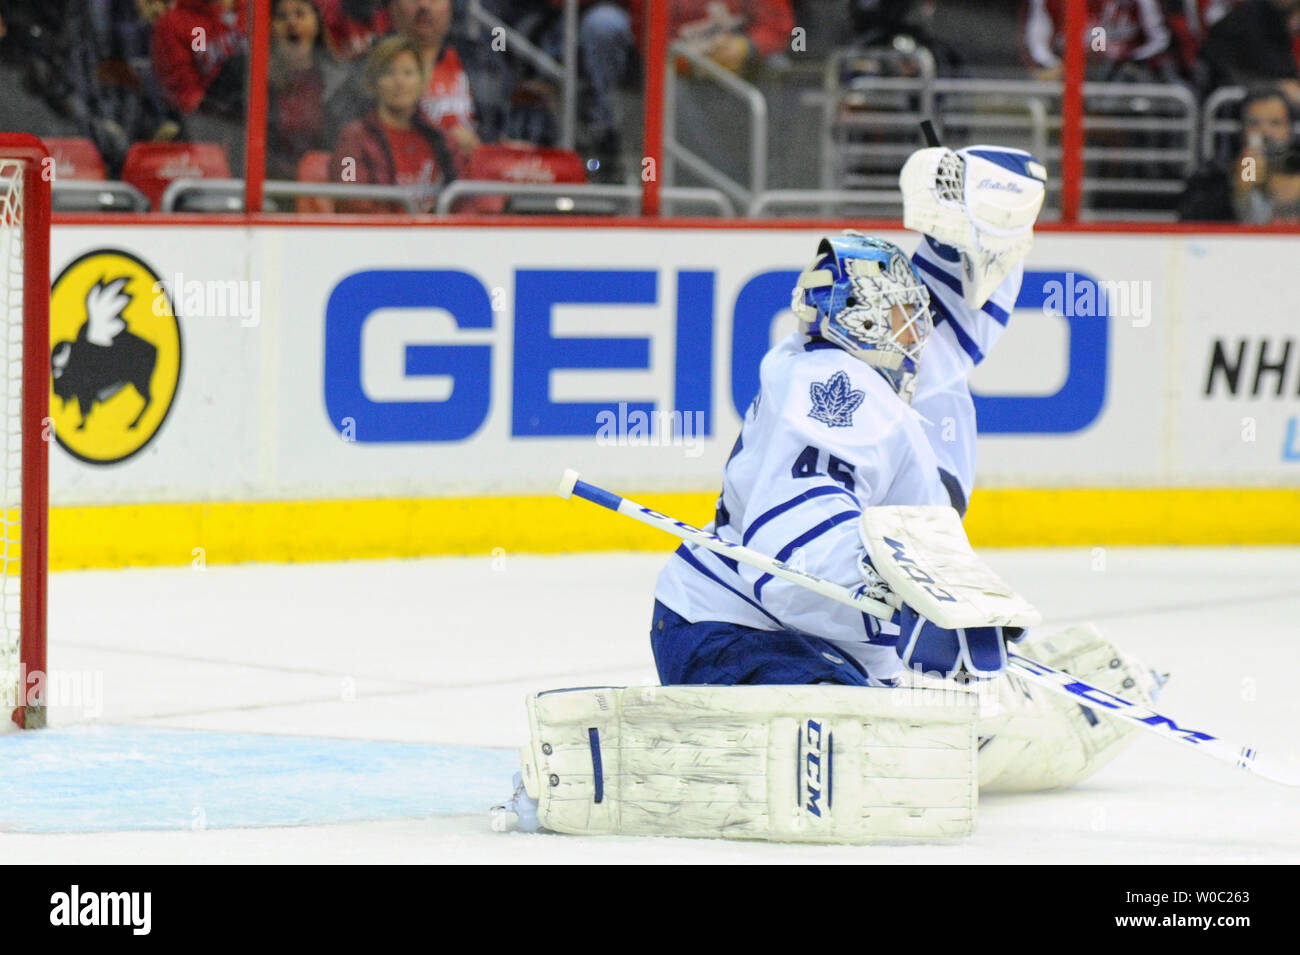 Former Maple Leafs goalie Jonathan Bernier retires